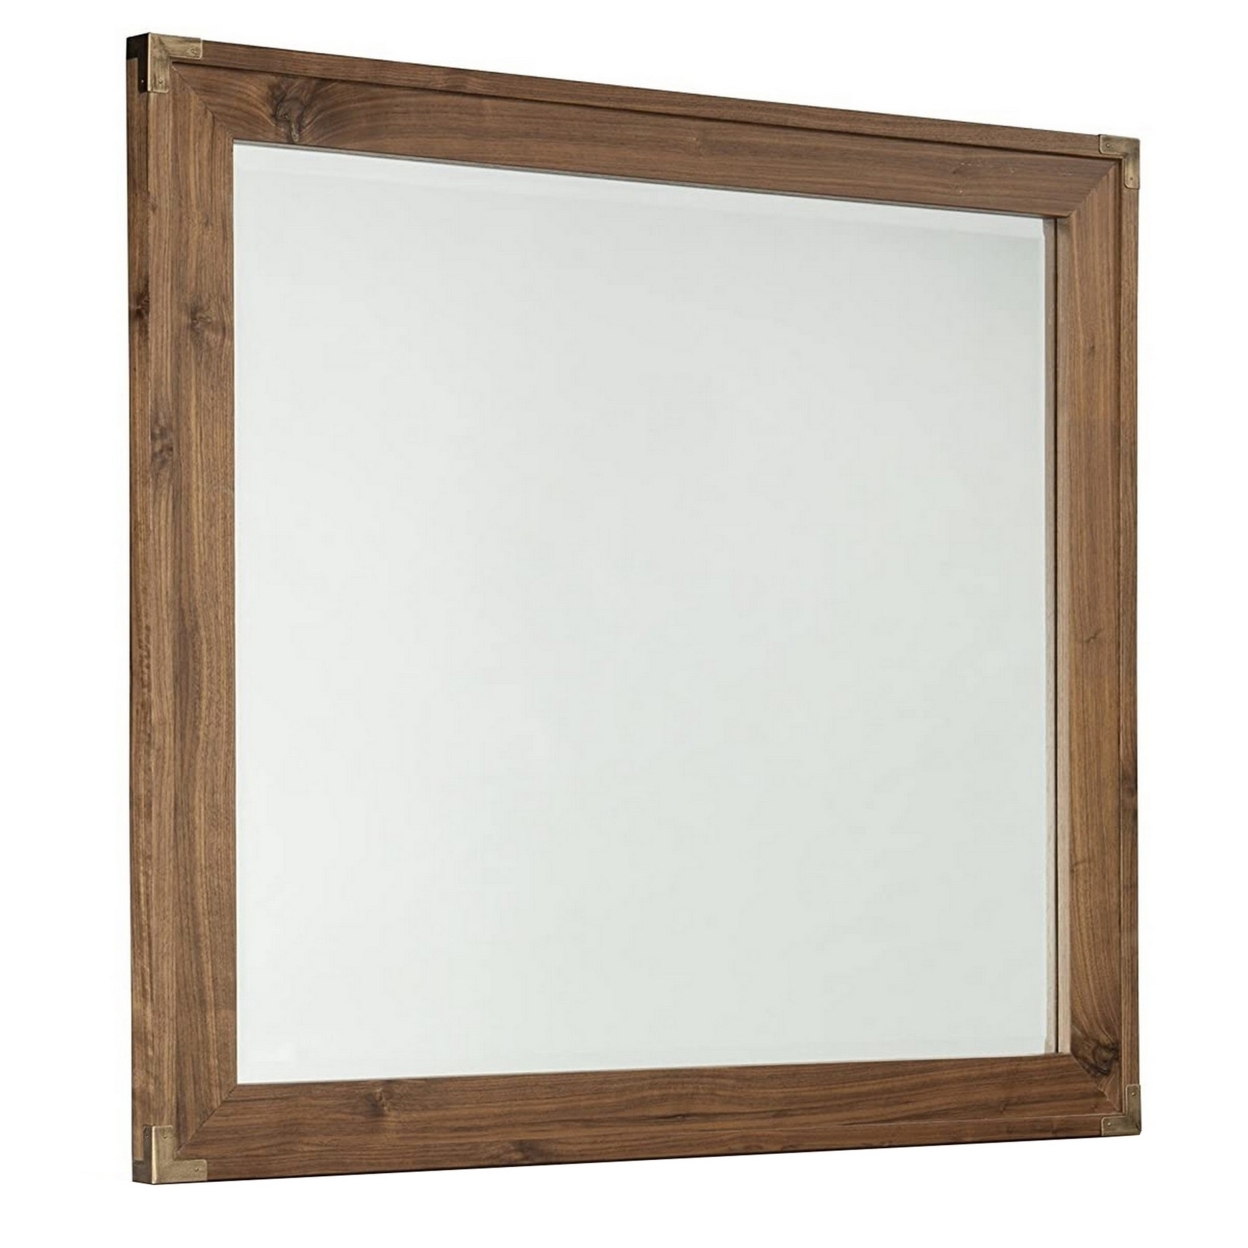 Rectangular Wooden Frame Mirror With Corner Brackets, Brown- Saltoro Sherpi